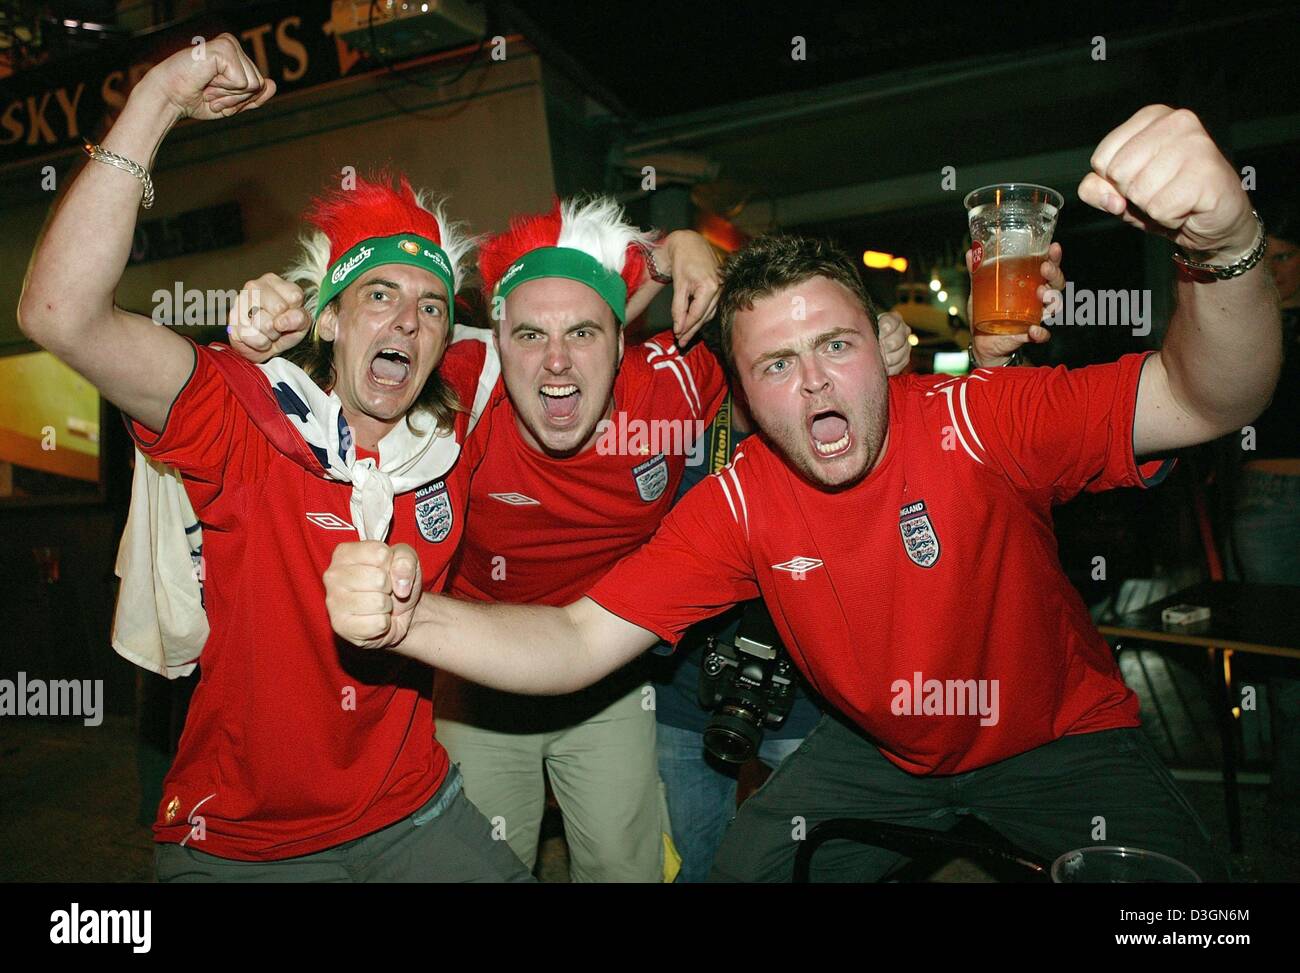 (Afp) - des fans de football anglais cheer et célébrer dans les rues de Lisbonne, Portugal, 21 juin 2004. L'Angleterre a gagné leur dernier euro 2004 Football match du groupe B contre la Croatie 4-2 et qualifié pour le quart de finale, tandis que la Croatie a chuté hors de la concurrence. Banque D'Images